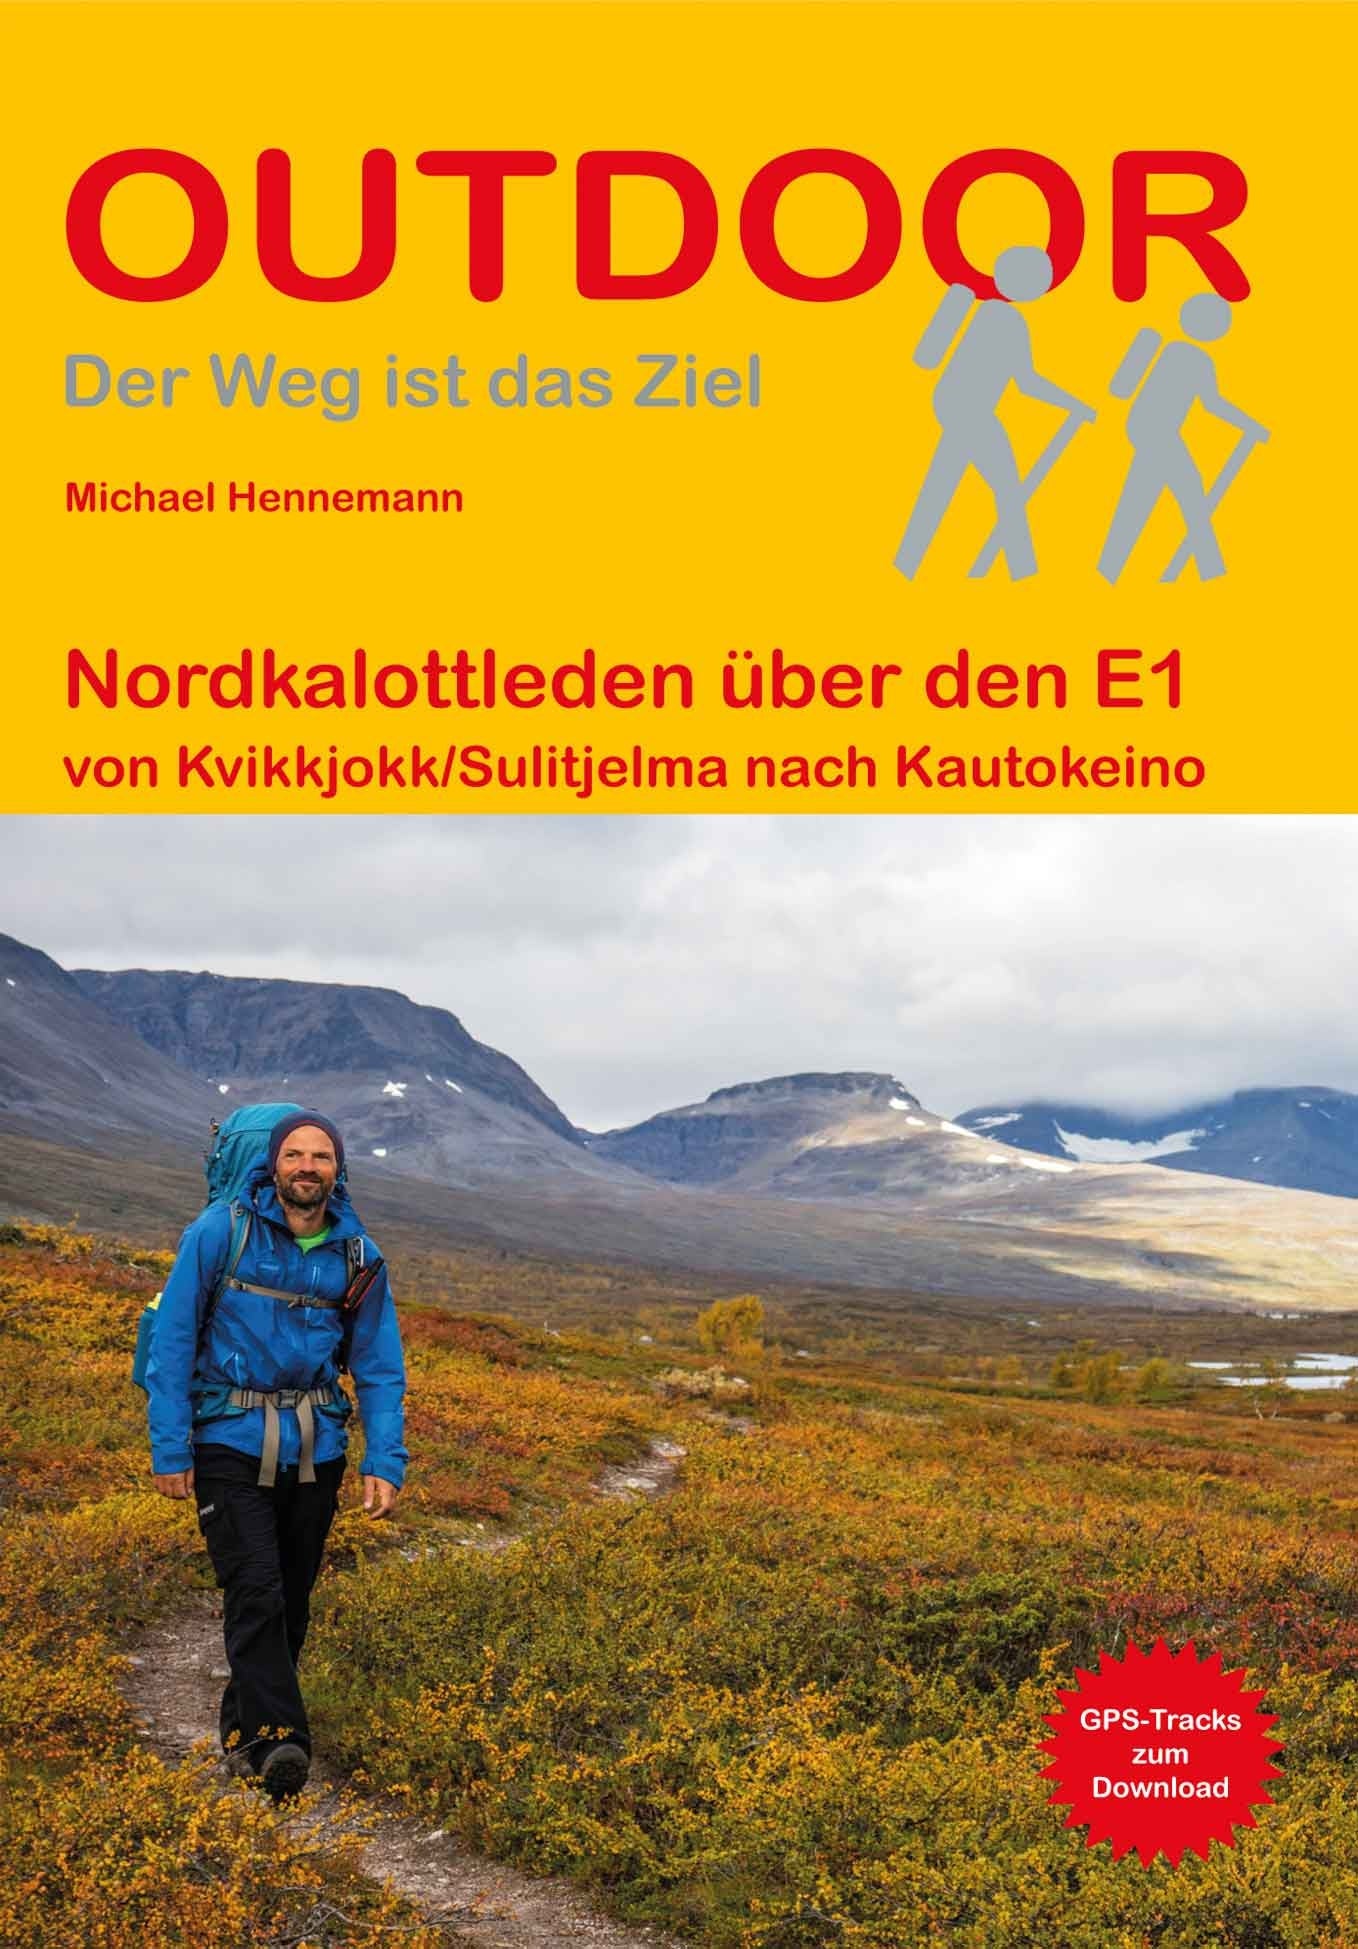 Hiking guide Nordkalottleden over the E1 (172)